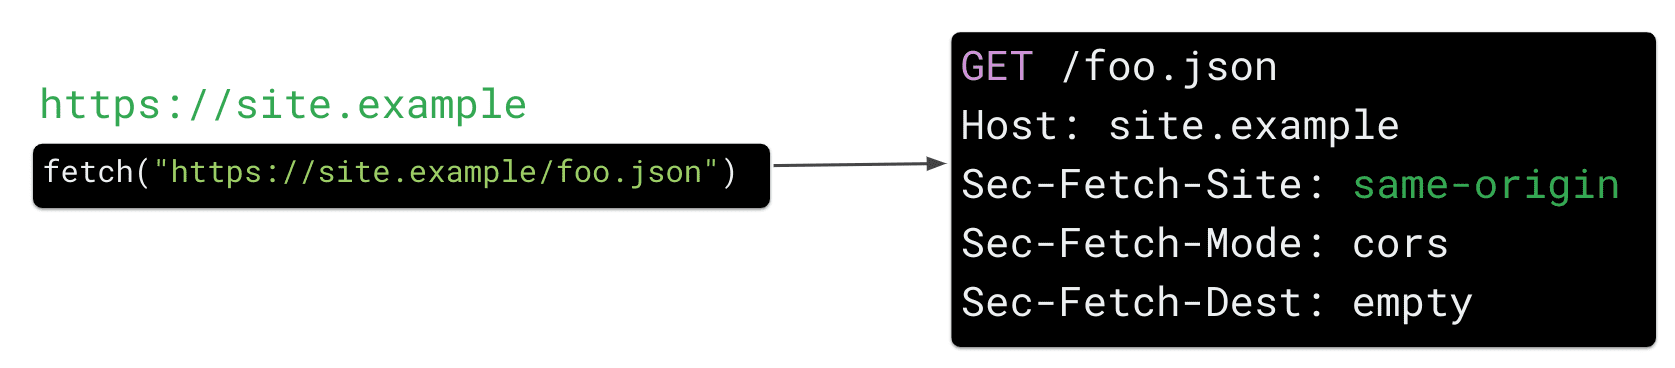 คำขอดึงข้อมูลจาก https://site.example สำหรับทรัพยากร https://site.example/foo.json ใน JavaScript ทำให้เบราว์เซอร์ส่งส่วนหัวของคำขอ HTTP &quot;Sec Fetch-Site: same-origin&quot;